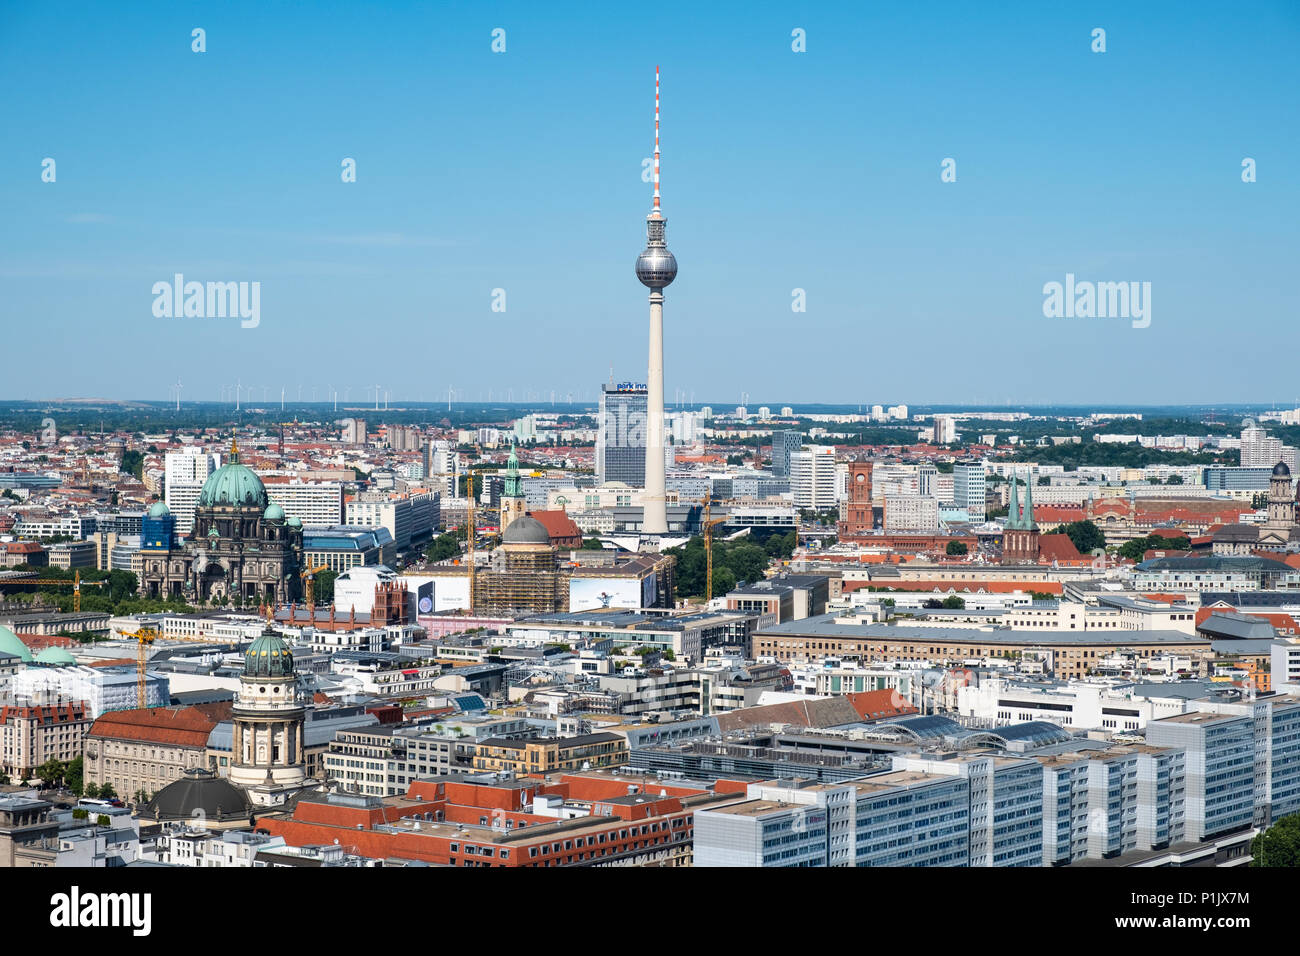 Toits de Berlin à l'égard de la tour de télévision Fernsehturm, Mitte, Berlin, Allemagne Banque D'Images